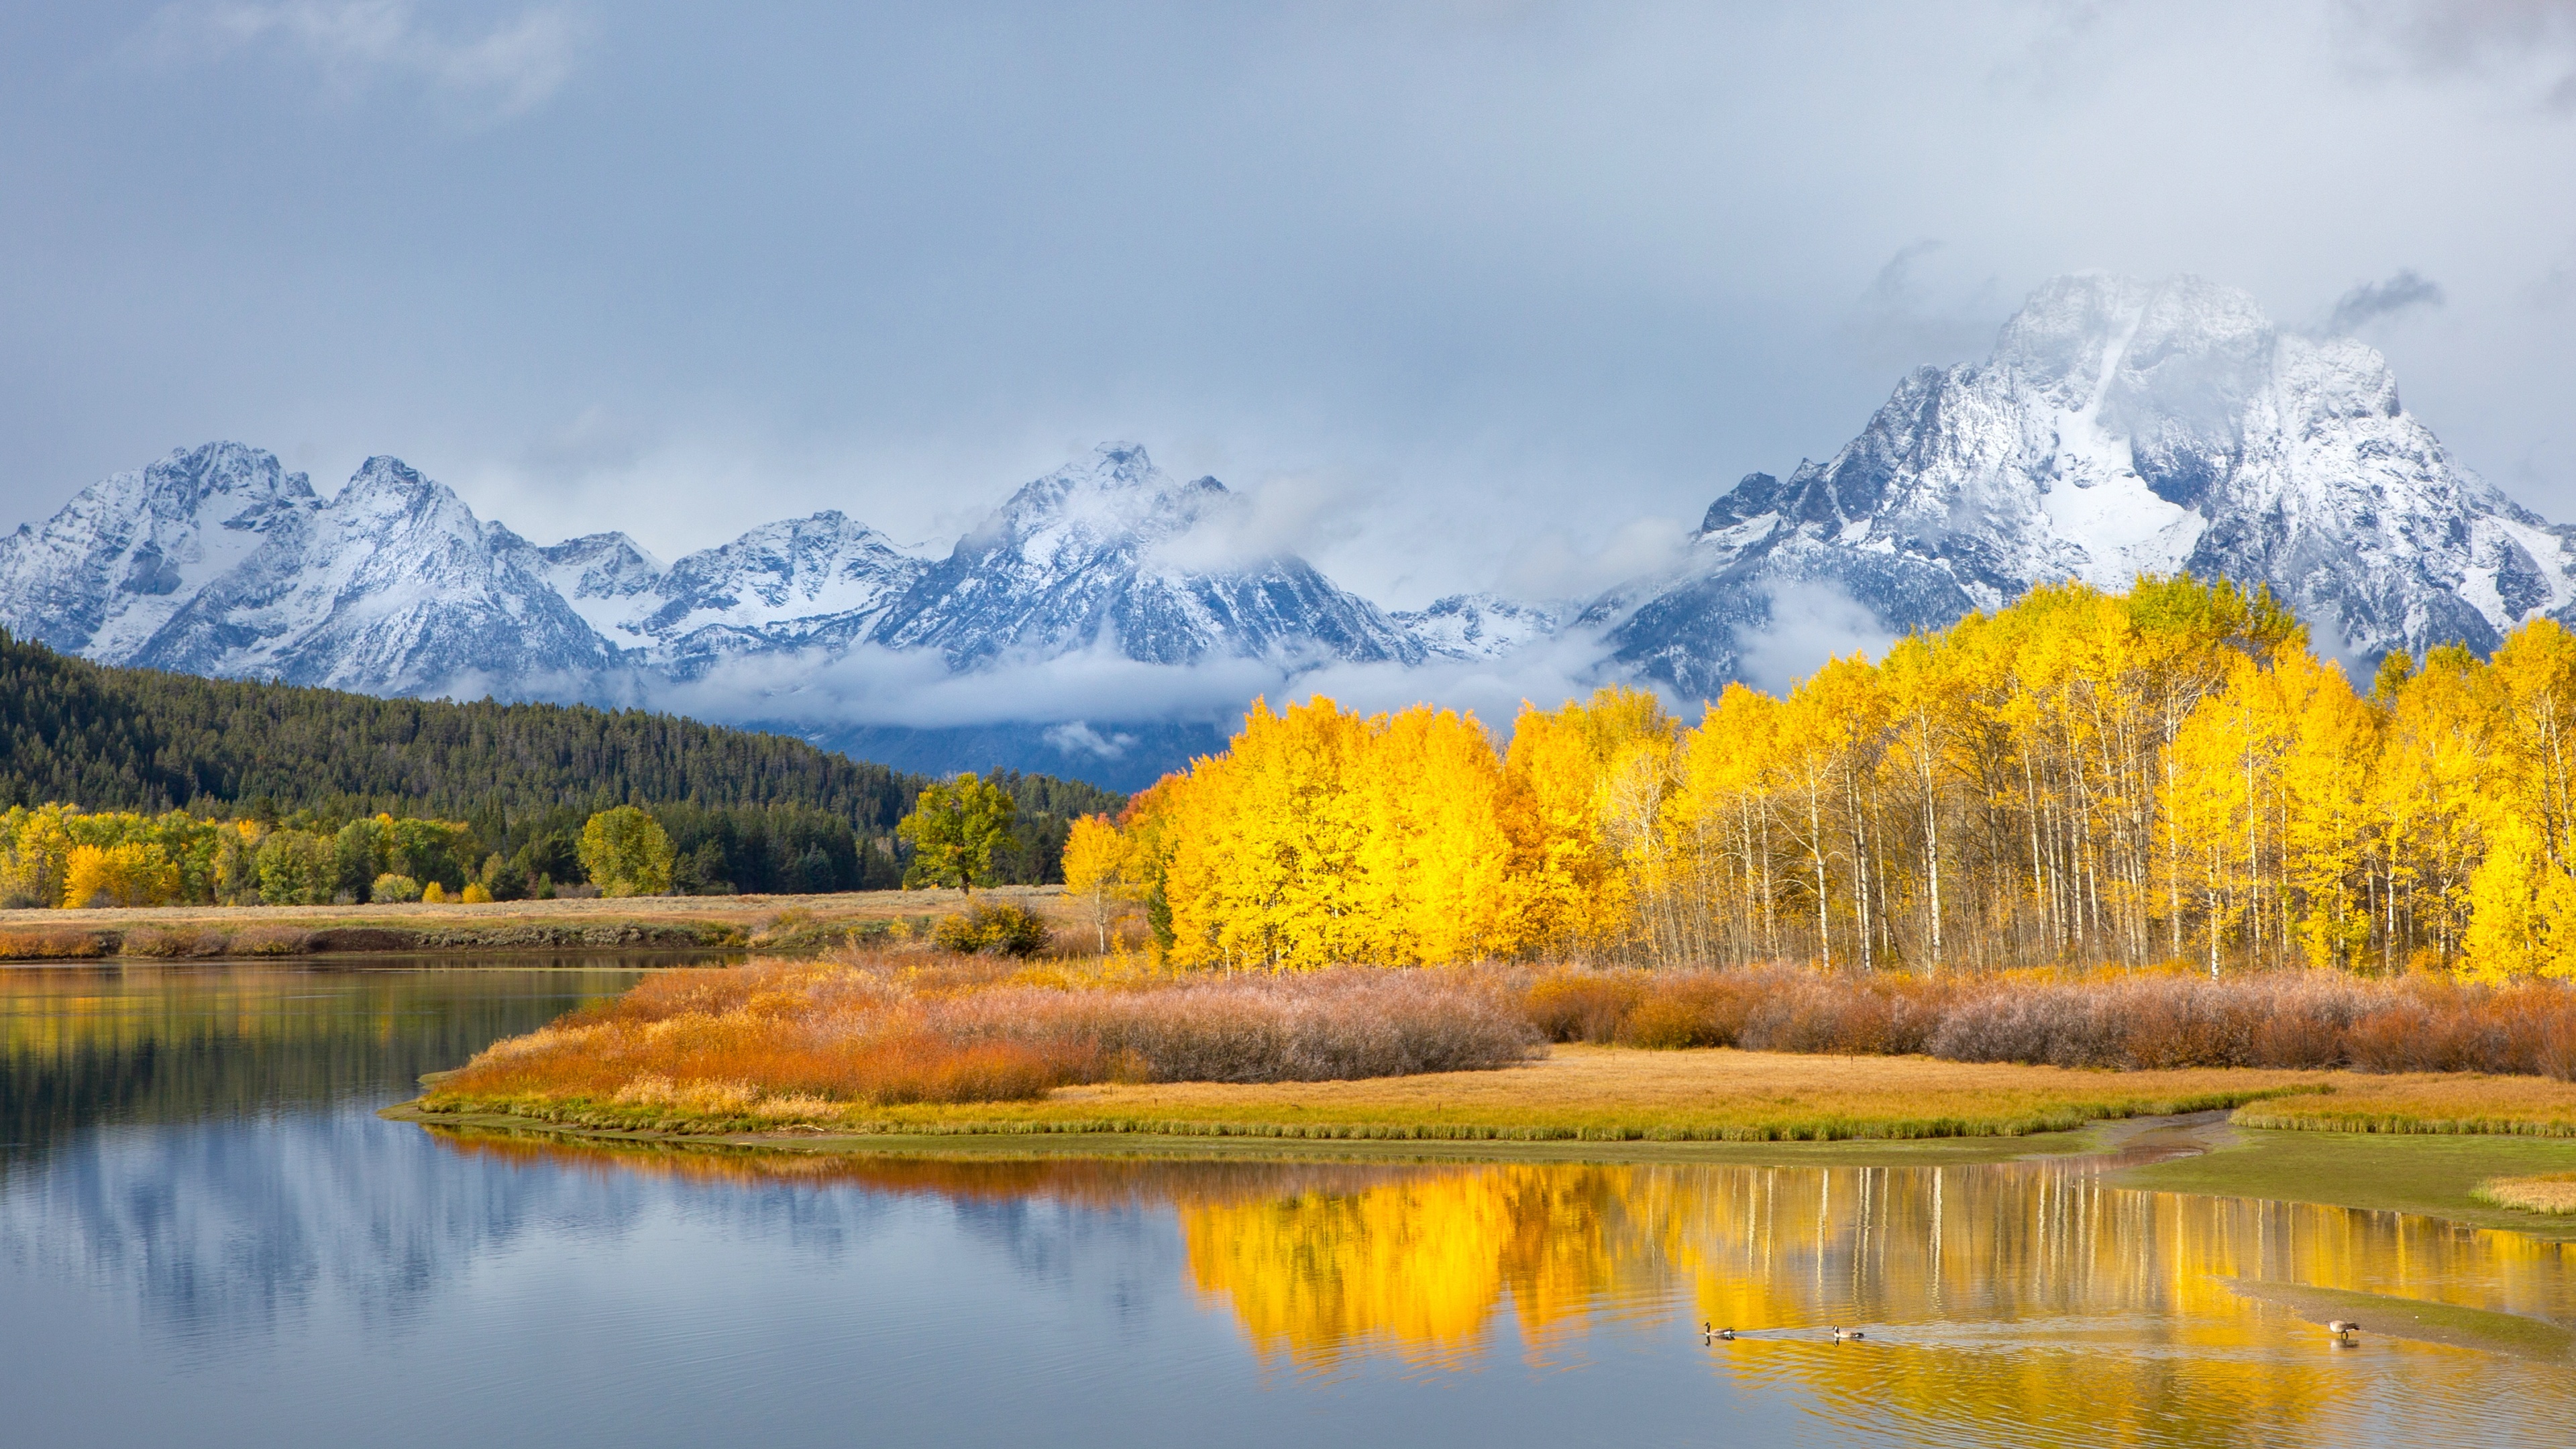 Grand Teton National Park, 4K wallpaper, Mountain landscape, Autumn colors, 3840x2160 4K Desktop